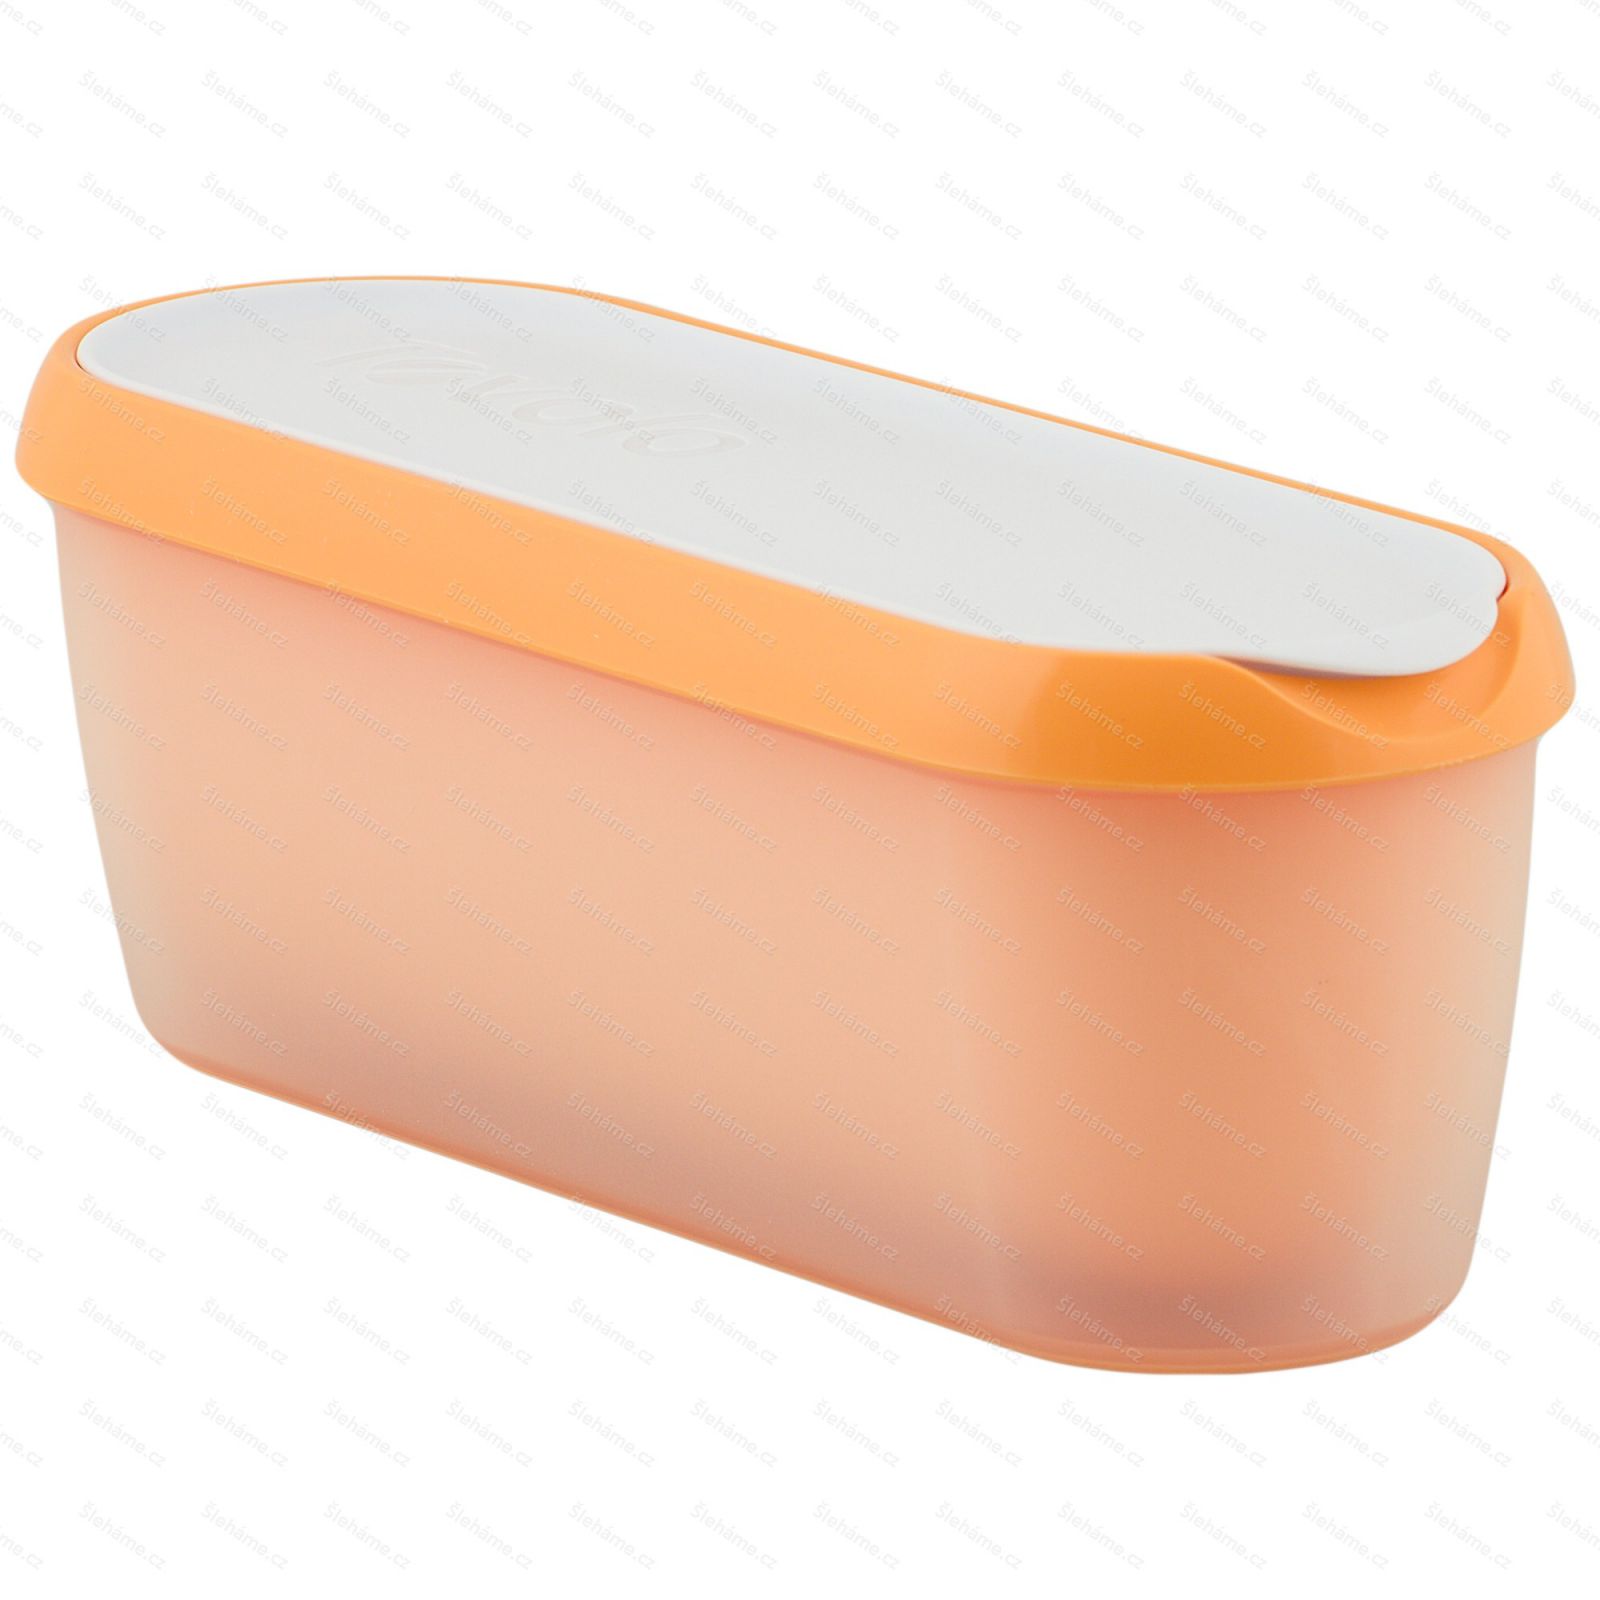 Ice cream tub Tovolo GLIDE-A-SCOOP 1.4 l, orange crush - main view